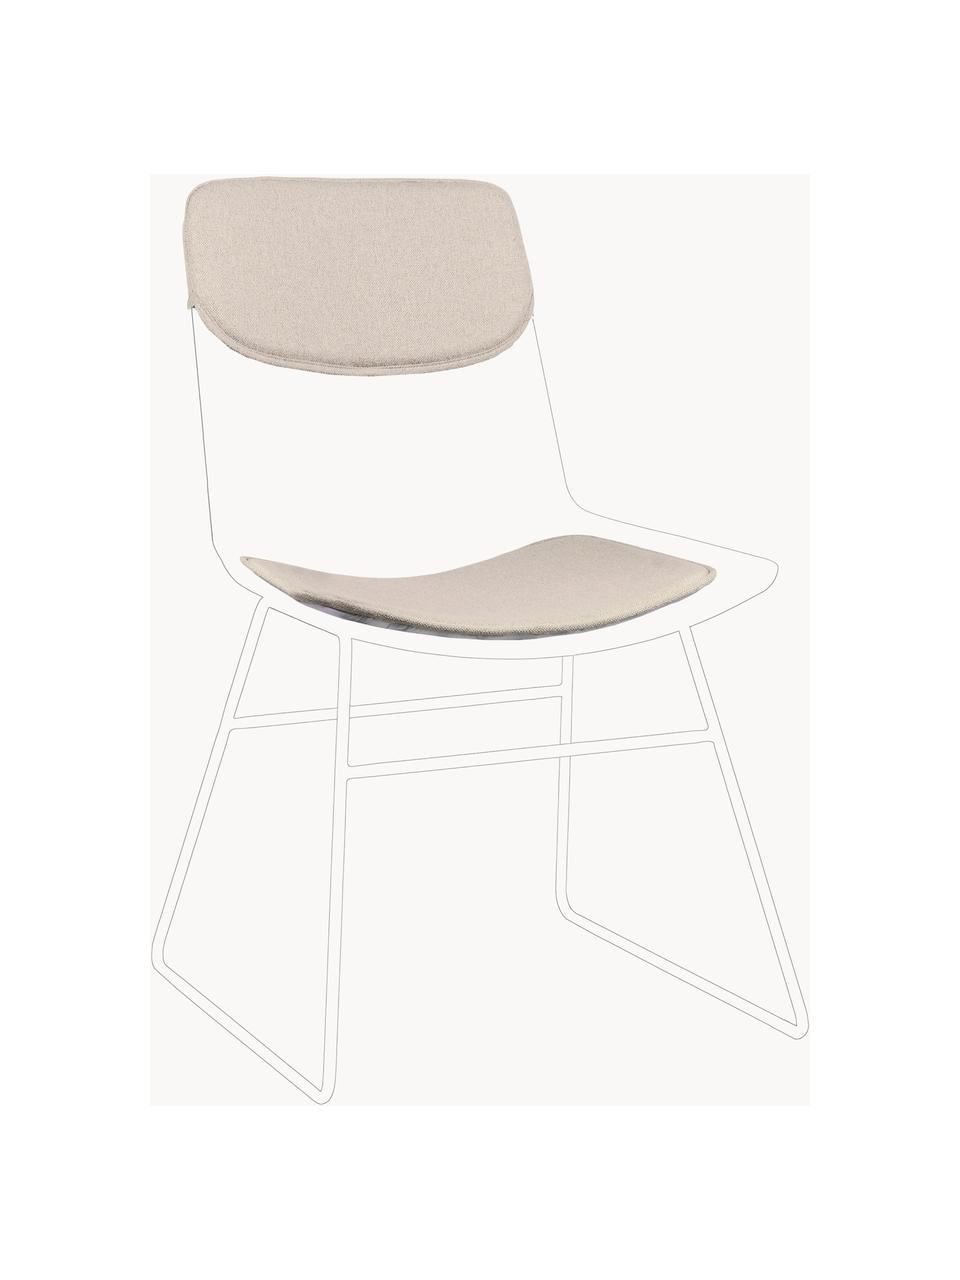 Sitzauflagen für Metall-Stuhl Wire, 2er-Set, Bezug: 60% Leinen, 30% Baumwolle, Hellbeige, Set mit verschiedenen Grössen